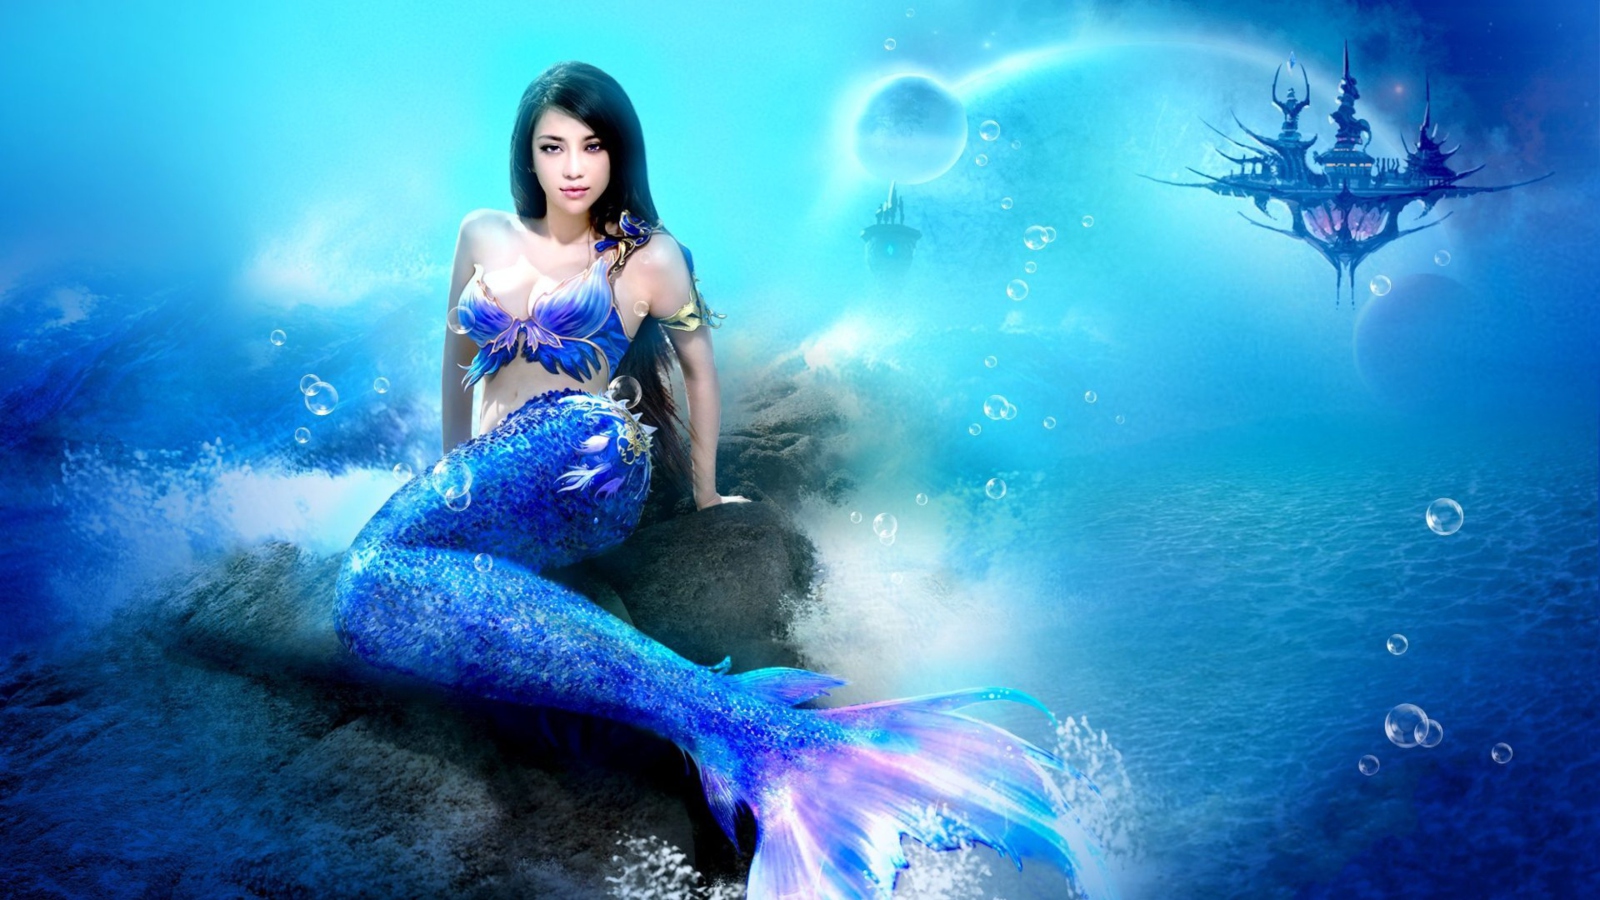 Das Misterious Blue Mermaid Wallpaper 1600x900